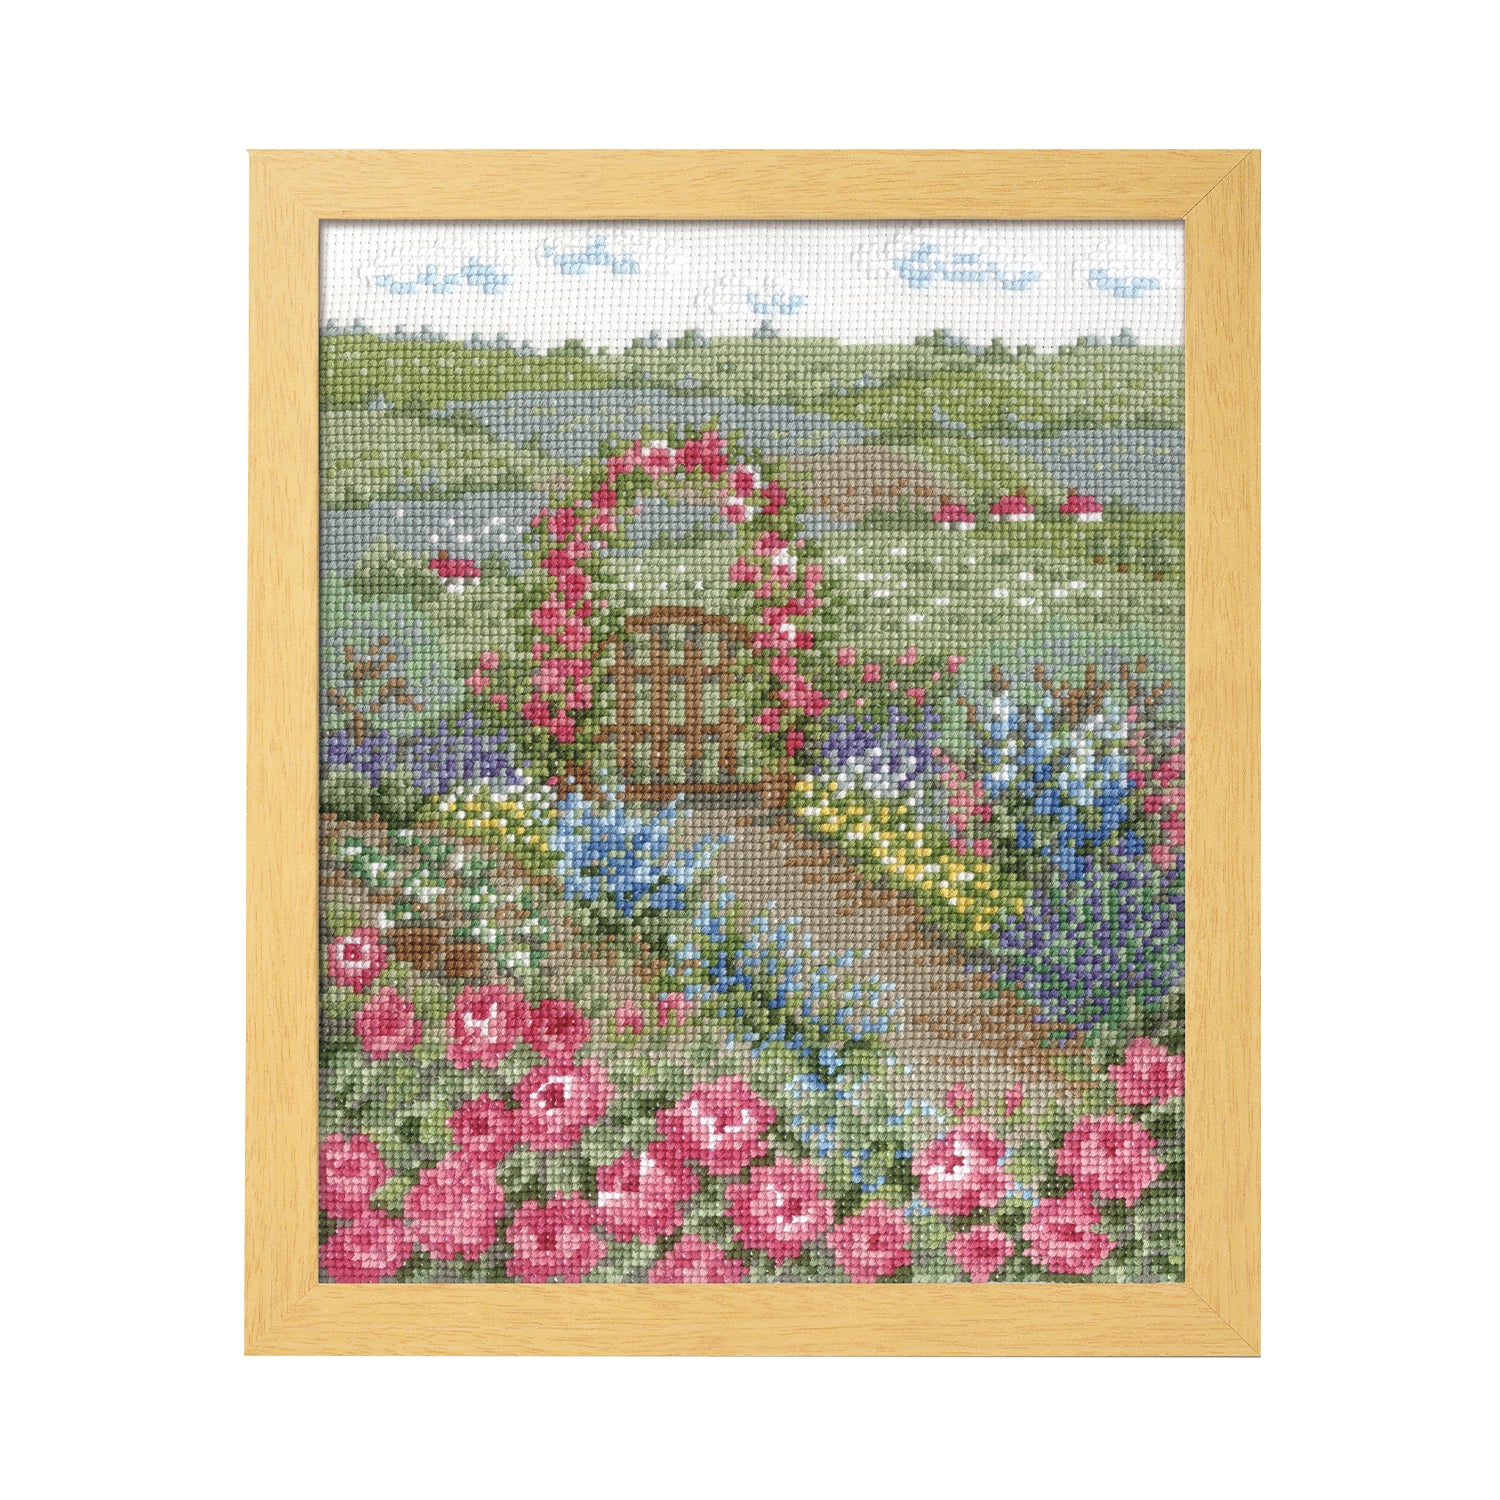 オリムパス クロスステッチ ししゅうキット オノエ・メグミ 7424 バラの花咲くピーターの庭